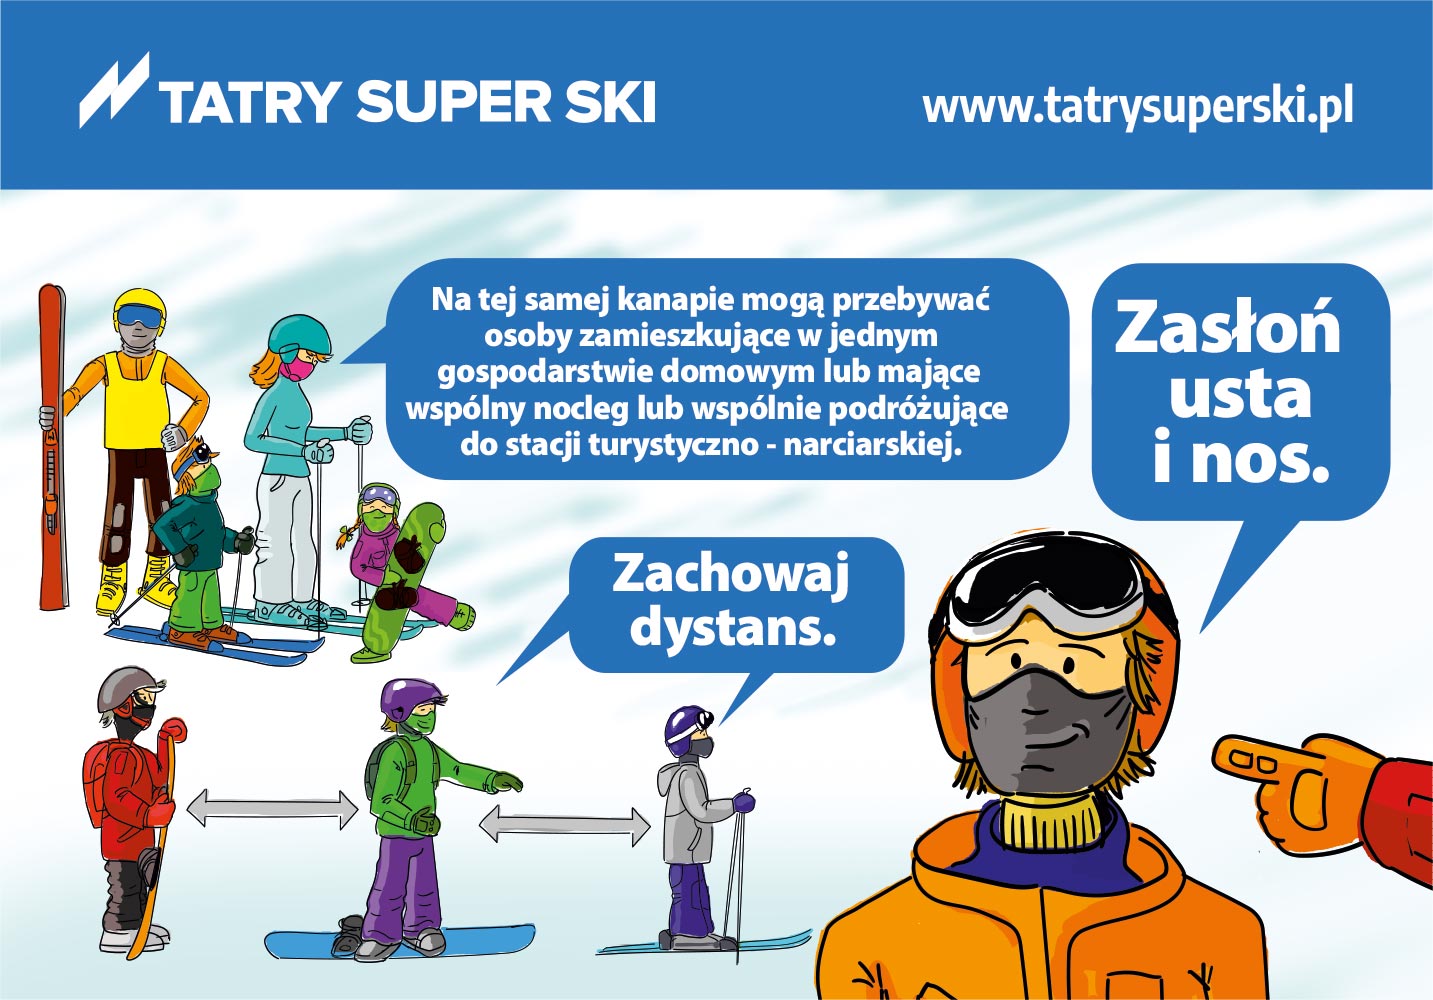 Tatry Super Ski - wytyczne COVID dla stacji narciarskich